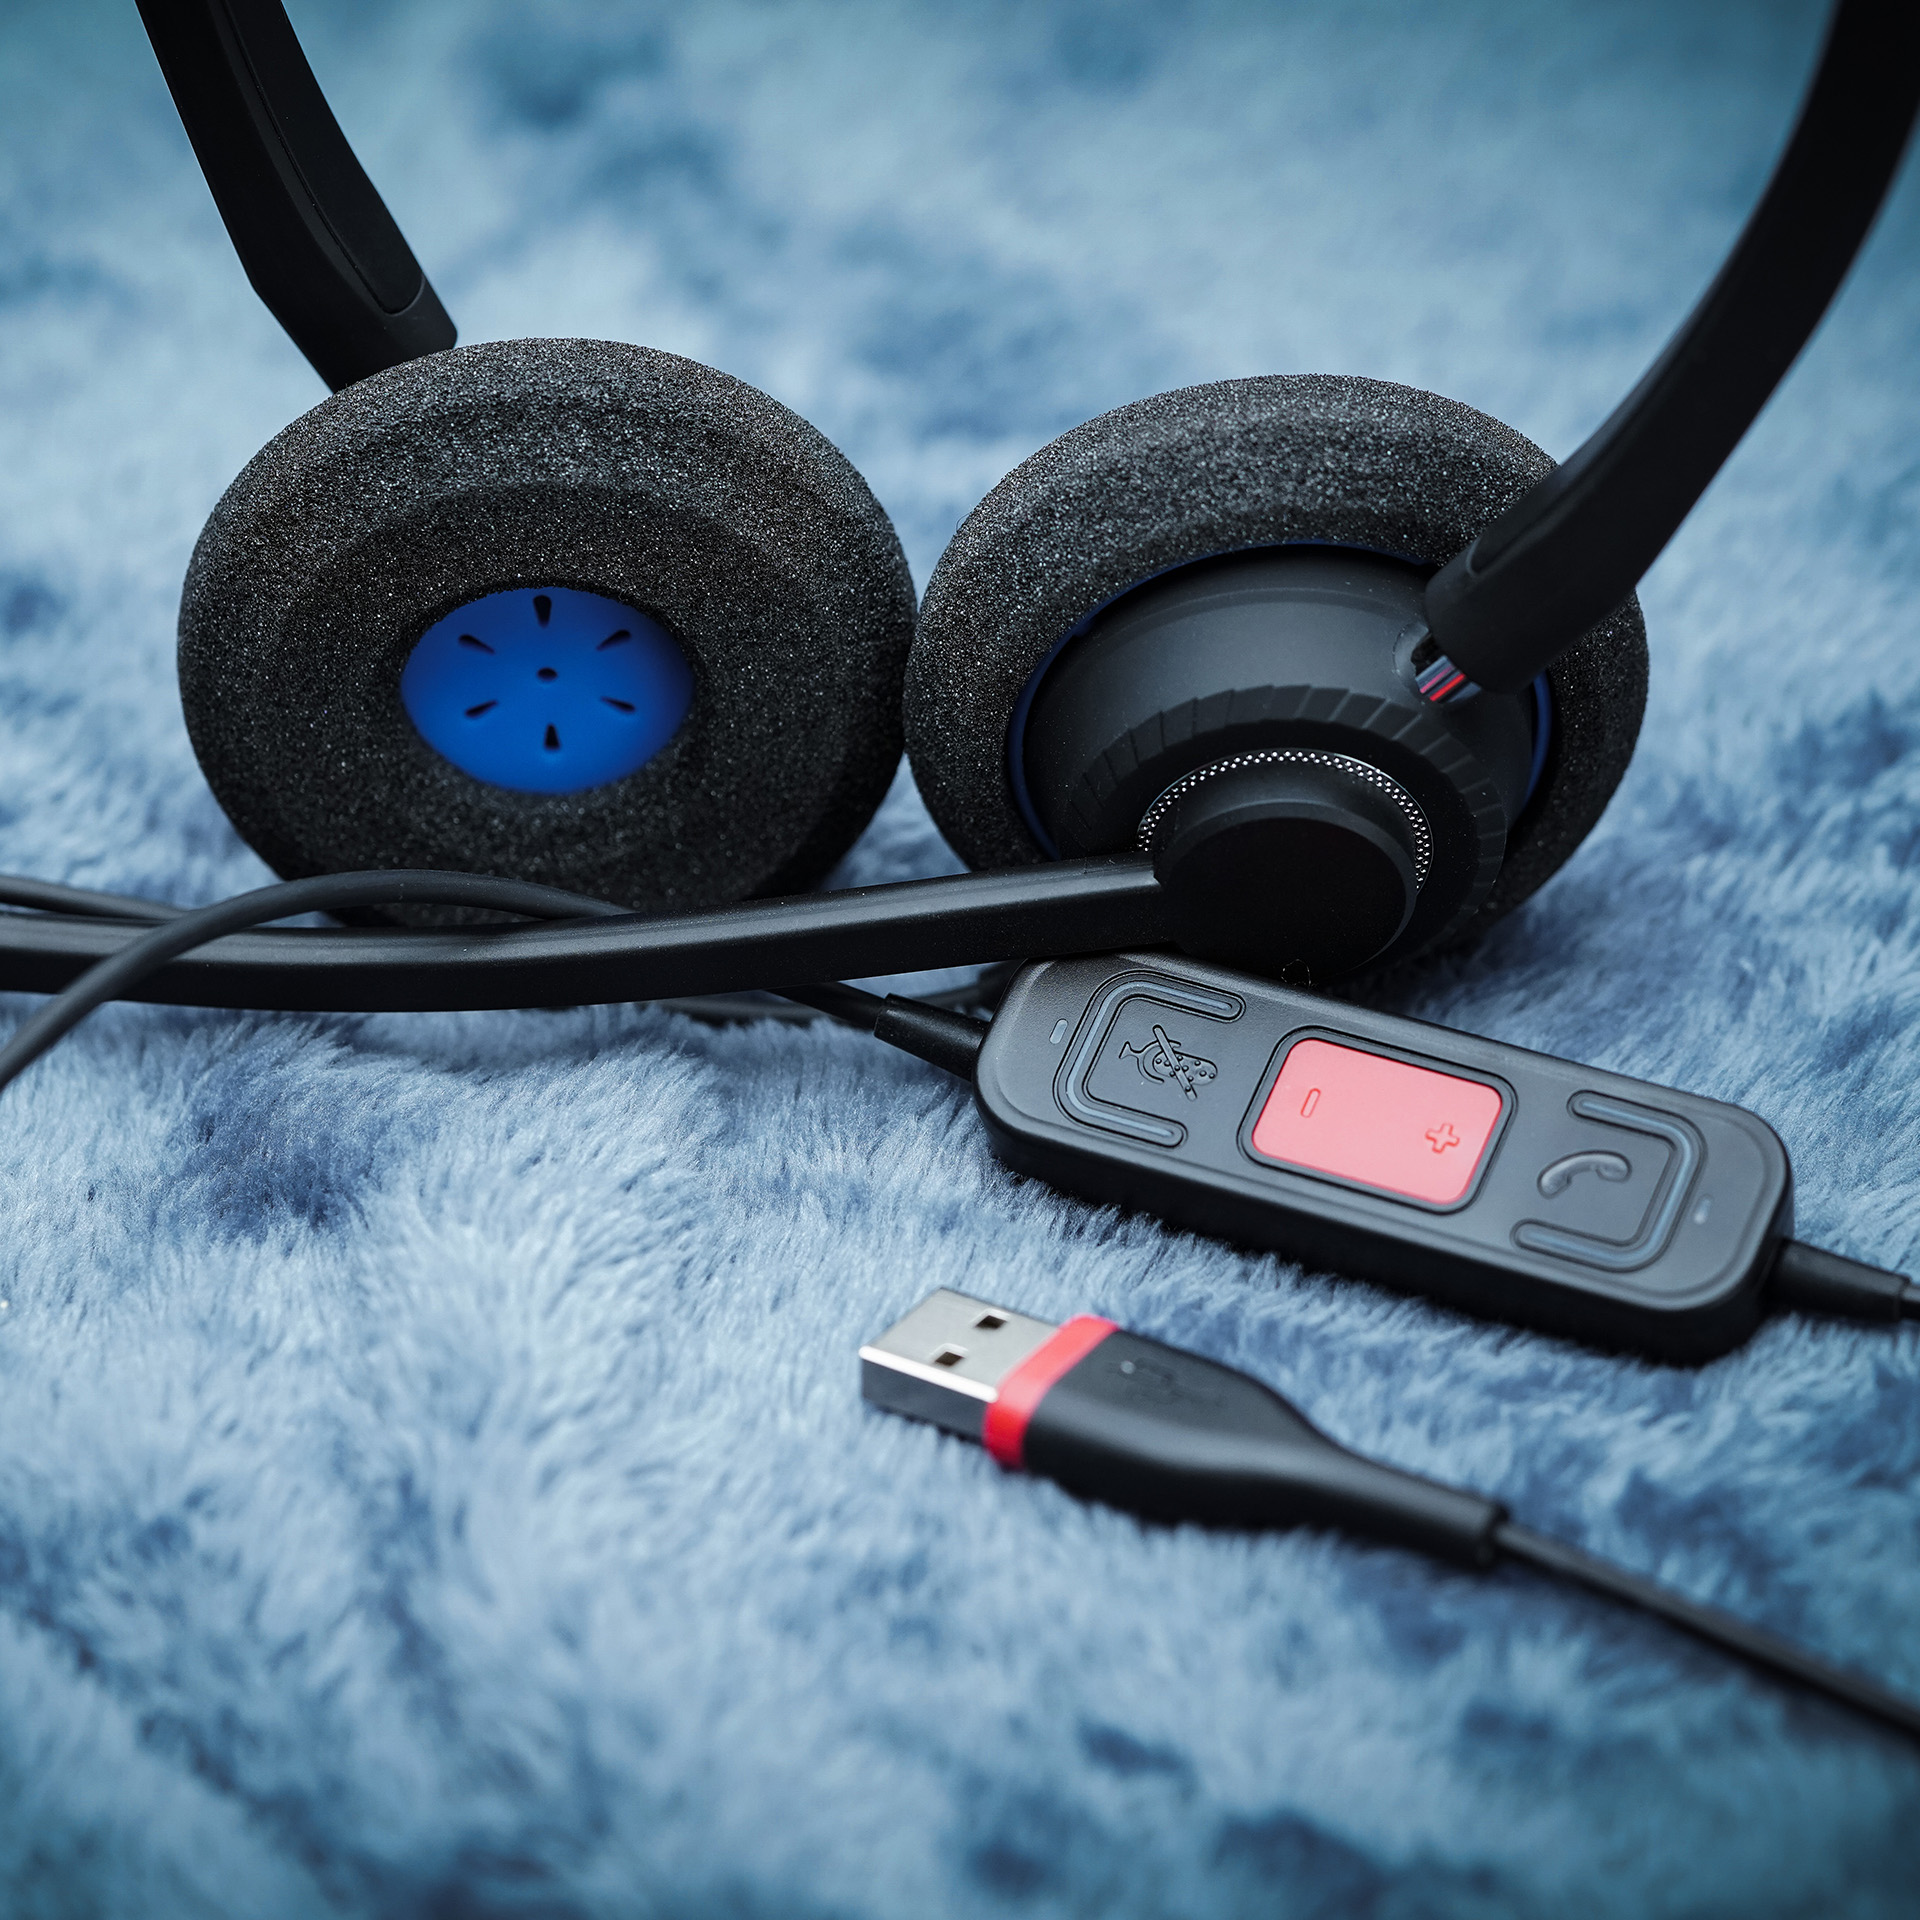 Voice Optimization Noise-cancelling Reliable High-denition Speakers With Voice Optimization Professional USB Headset